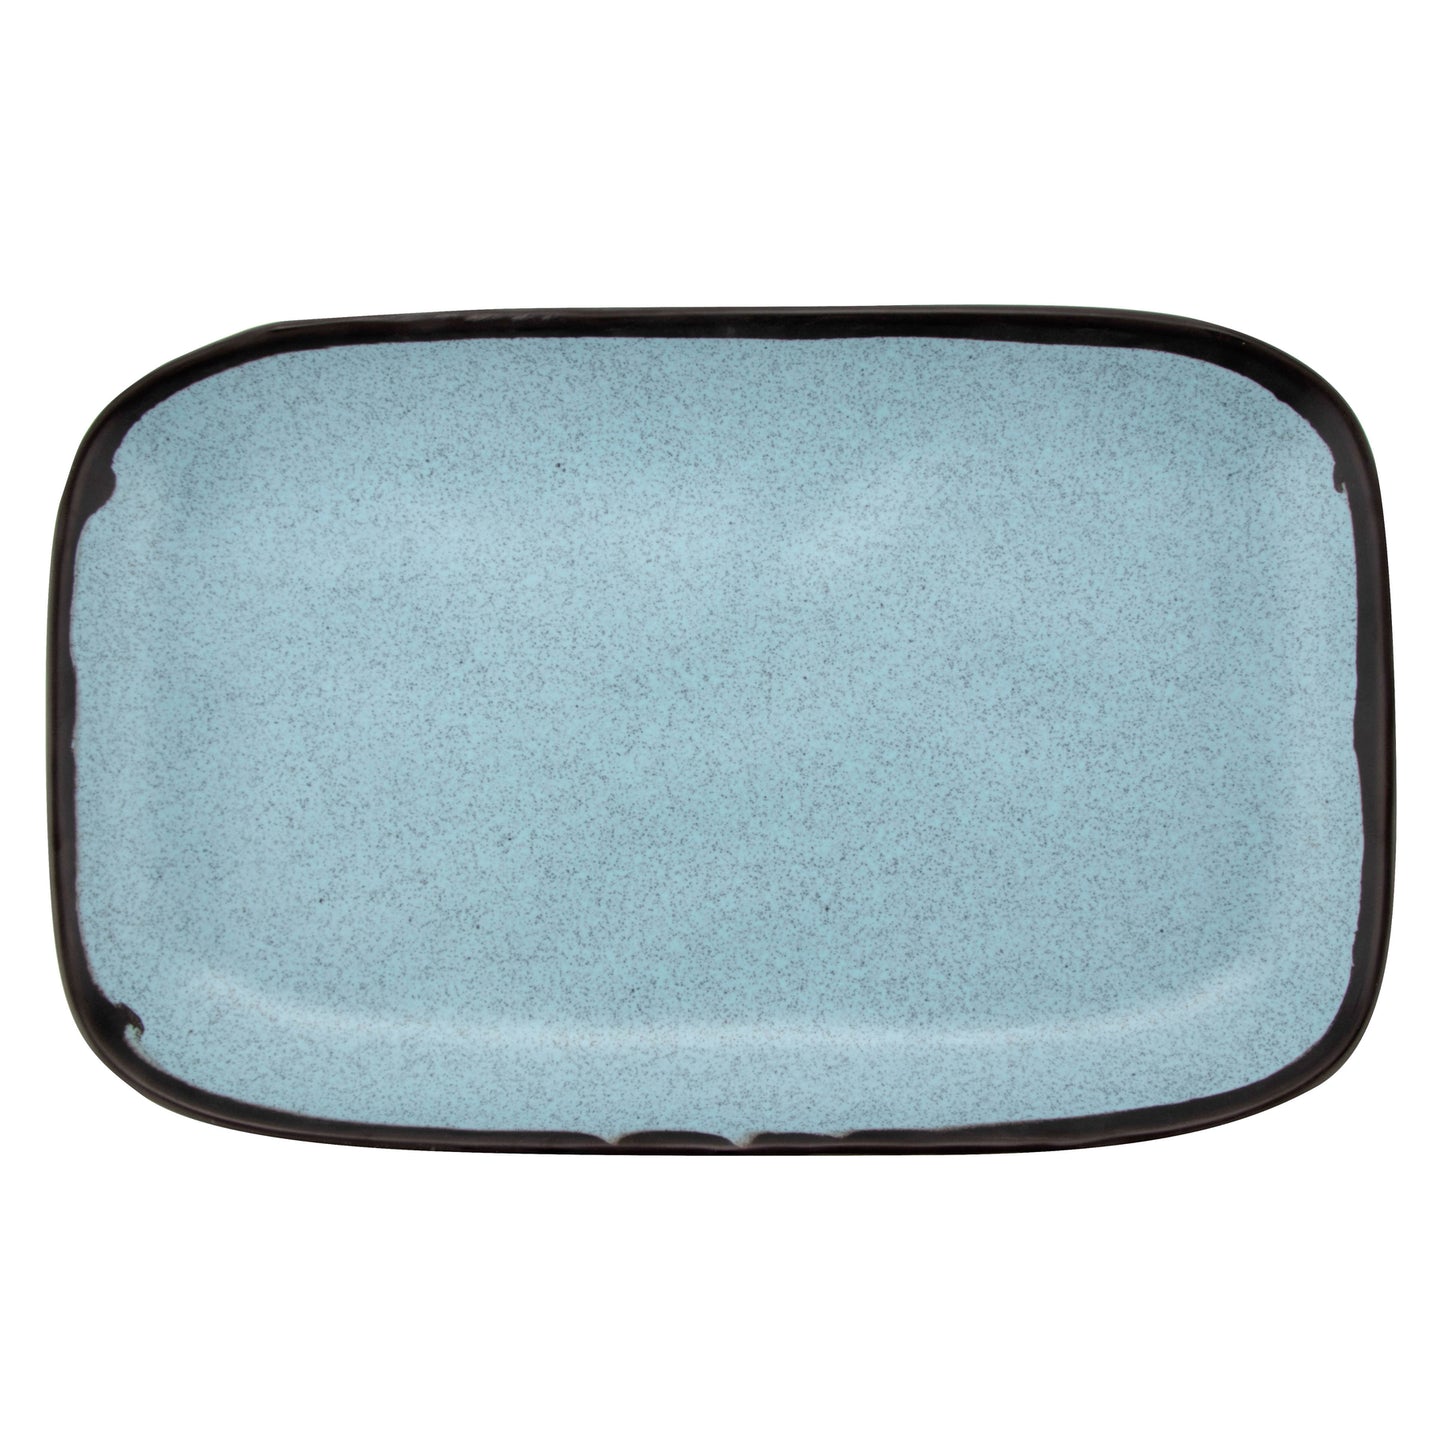 12" x 7.5" Speckled Grayish Blue, Melamine, Rectangular Dinner Plate, G.E.T. Pottery Market Matte (12 Pack)